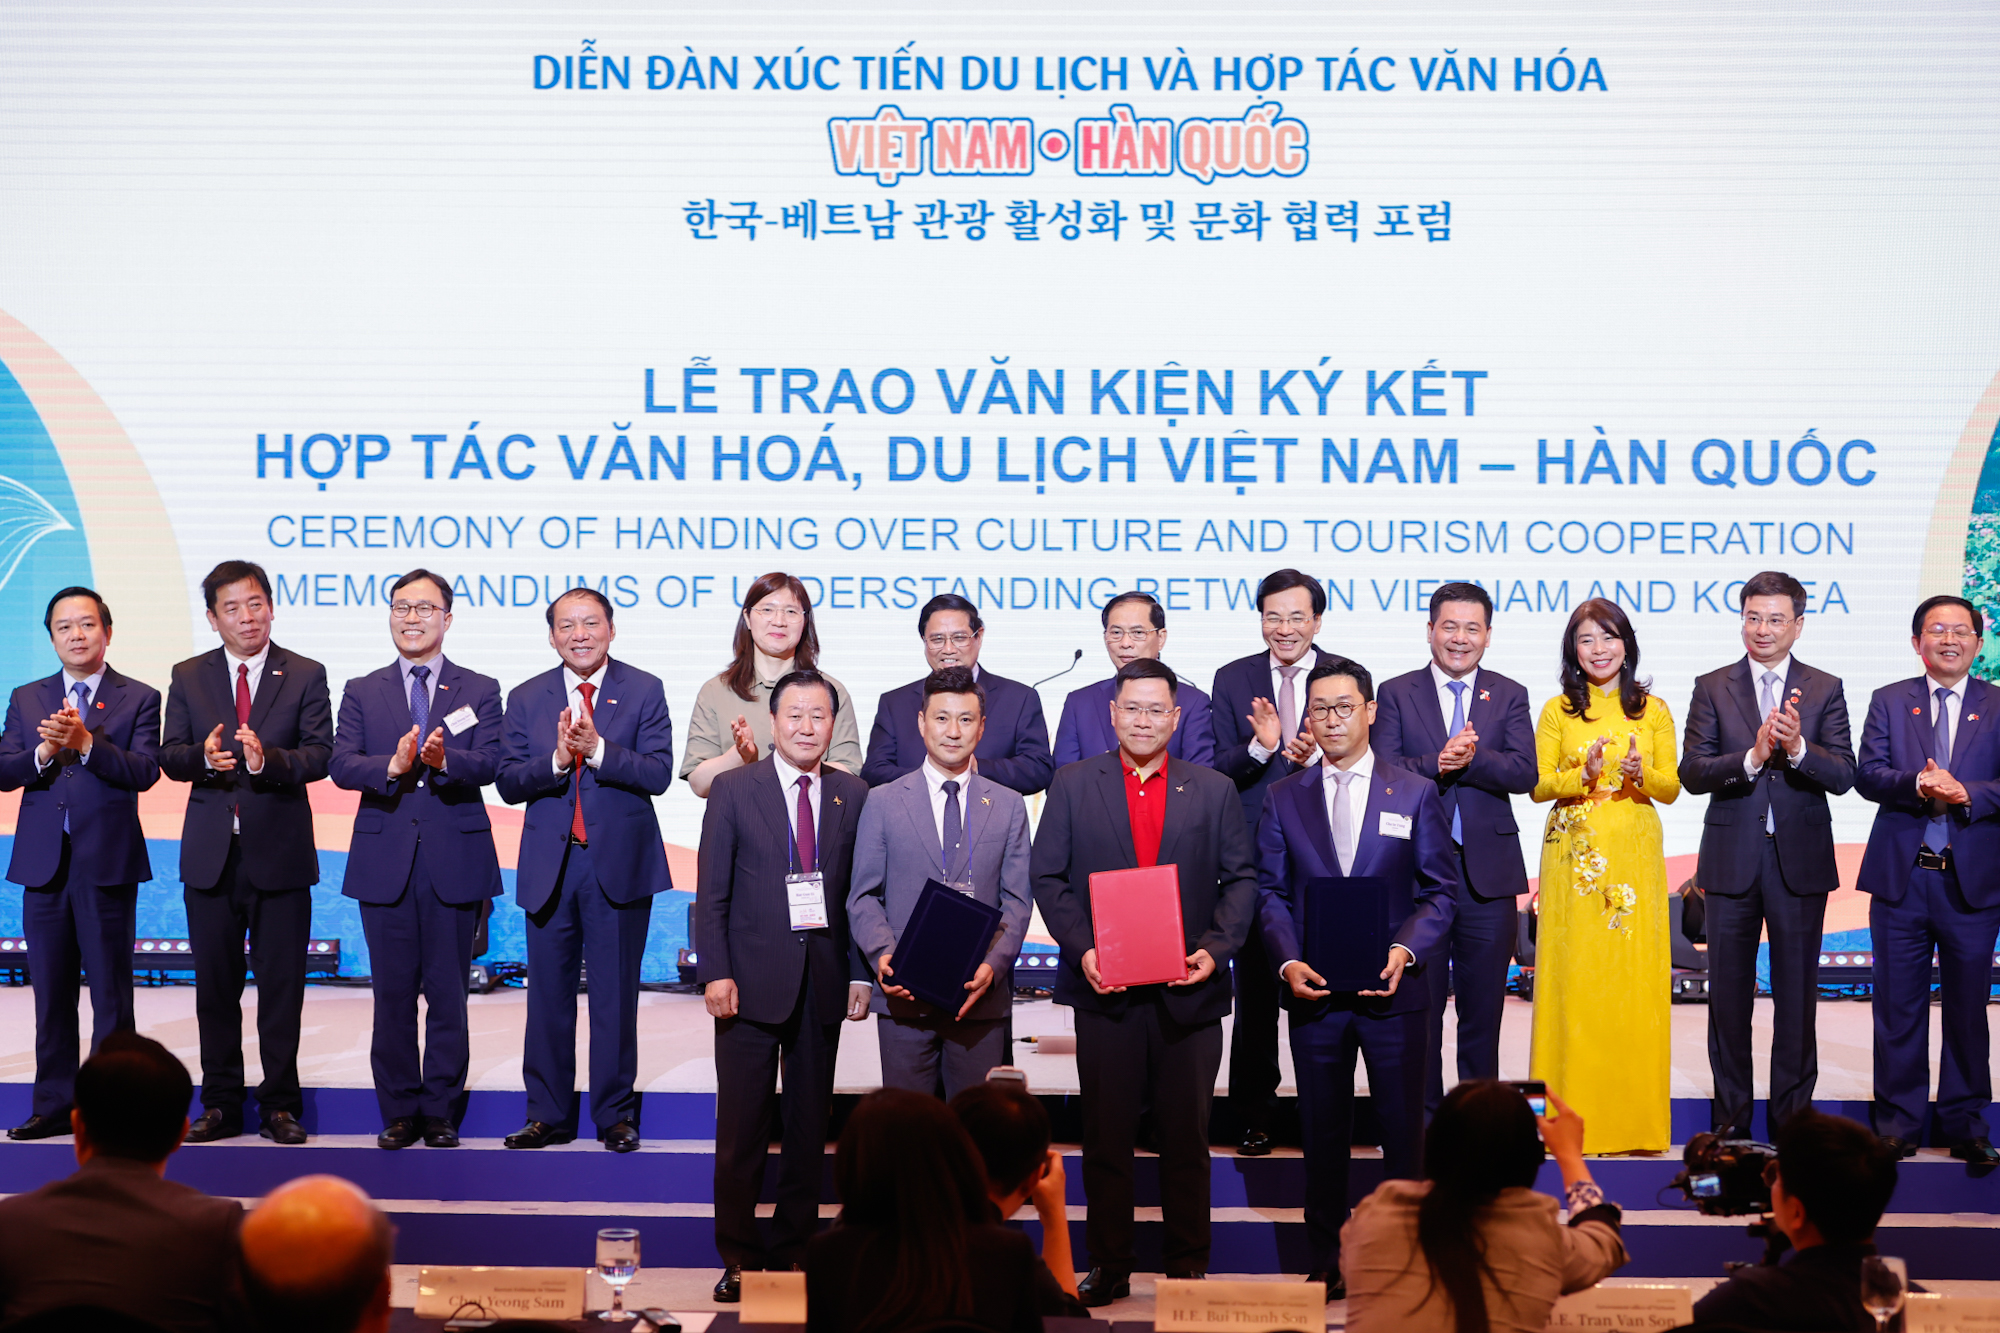 Lễ trao văn kiện ký kết hợp tác văn hóa, du lịch Việt Nam - Hàn Quốc - Ảnh: VGP/Nhật Bắc